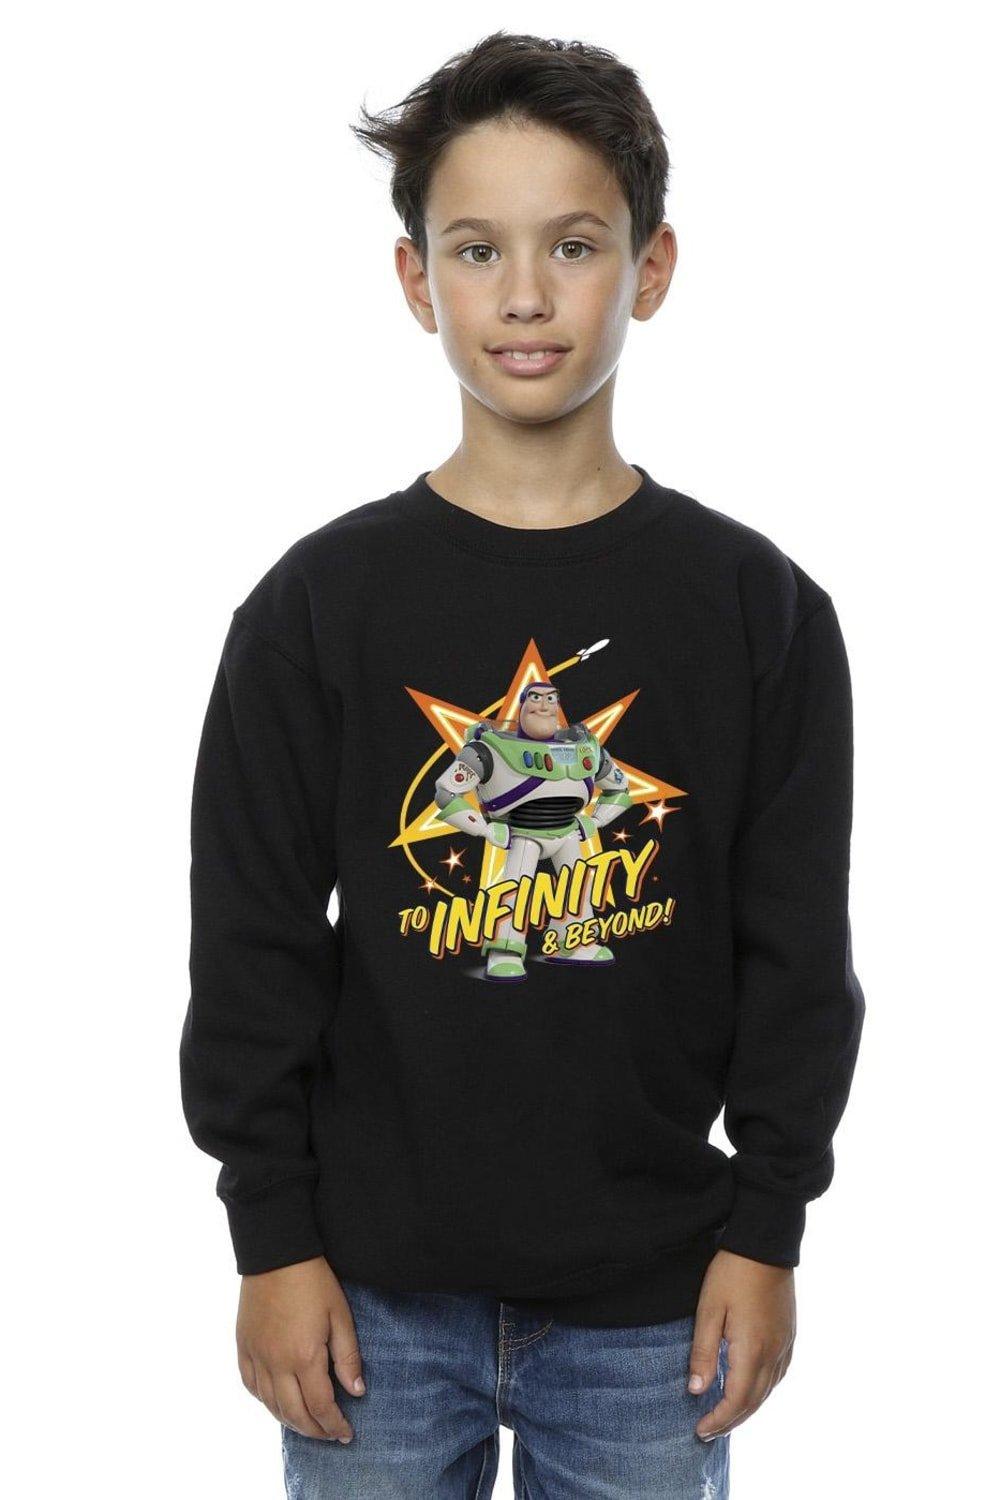 Toy Story Buzz To Infinity Sweatshirt